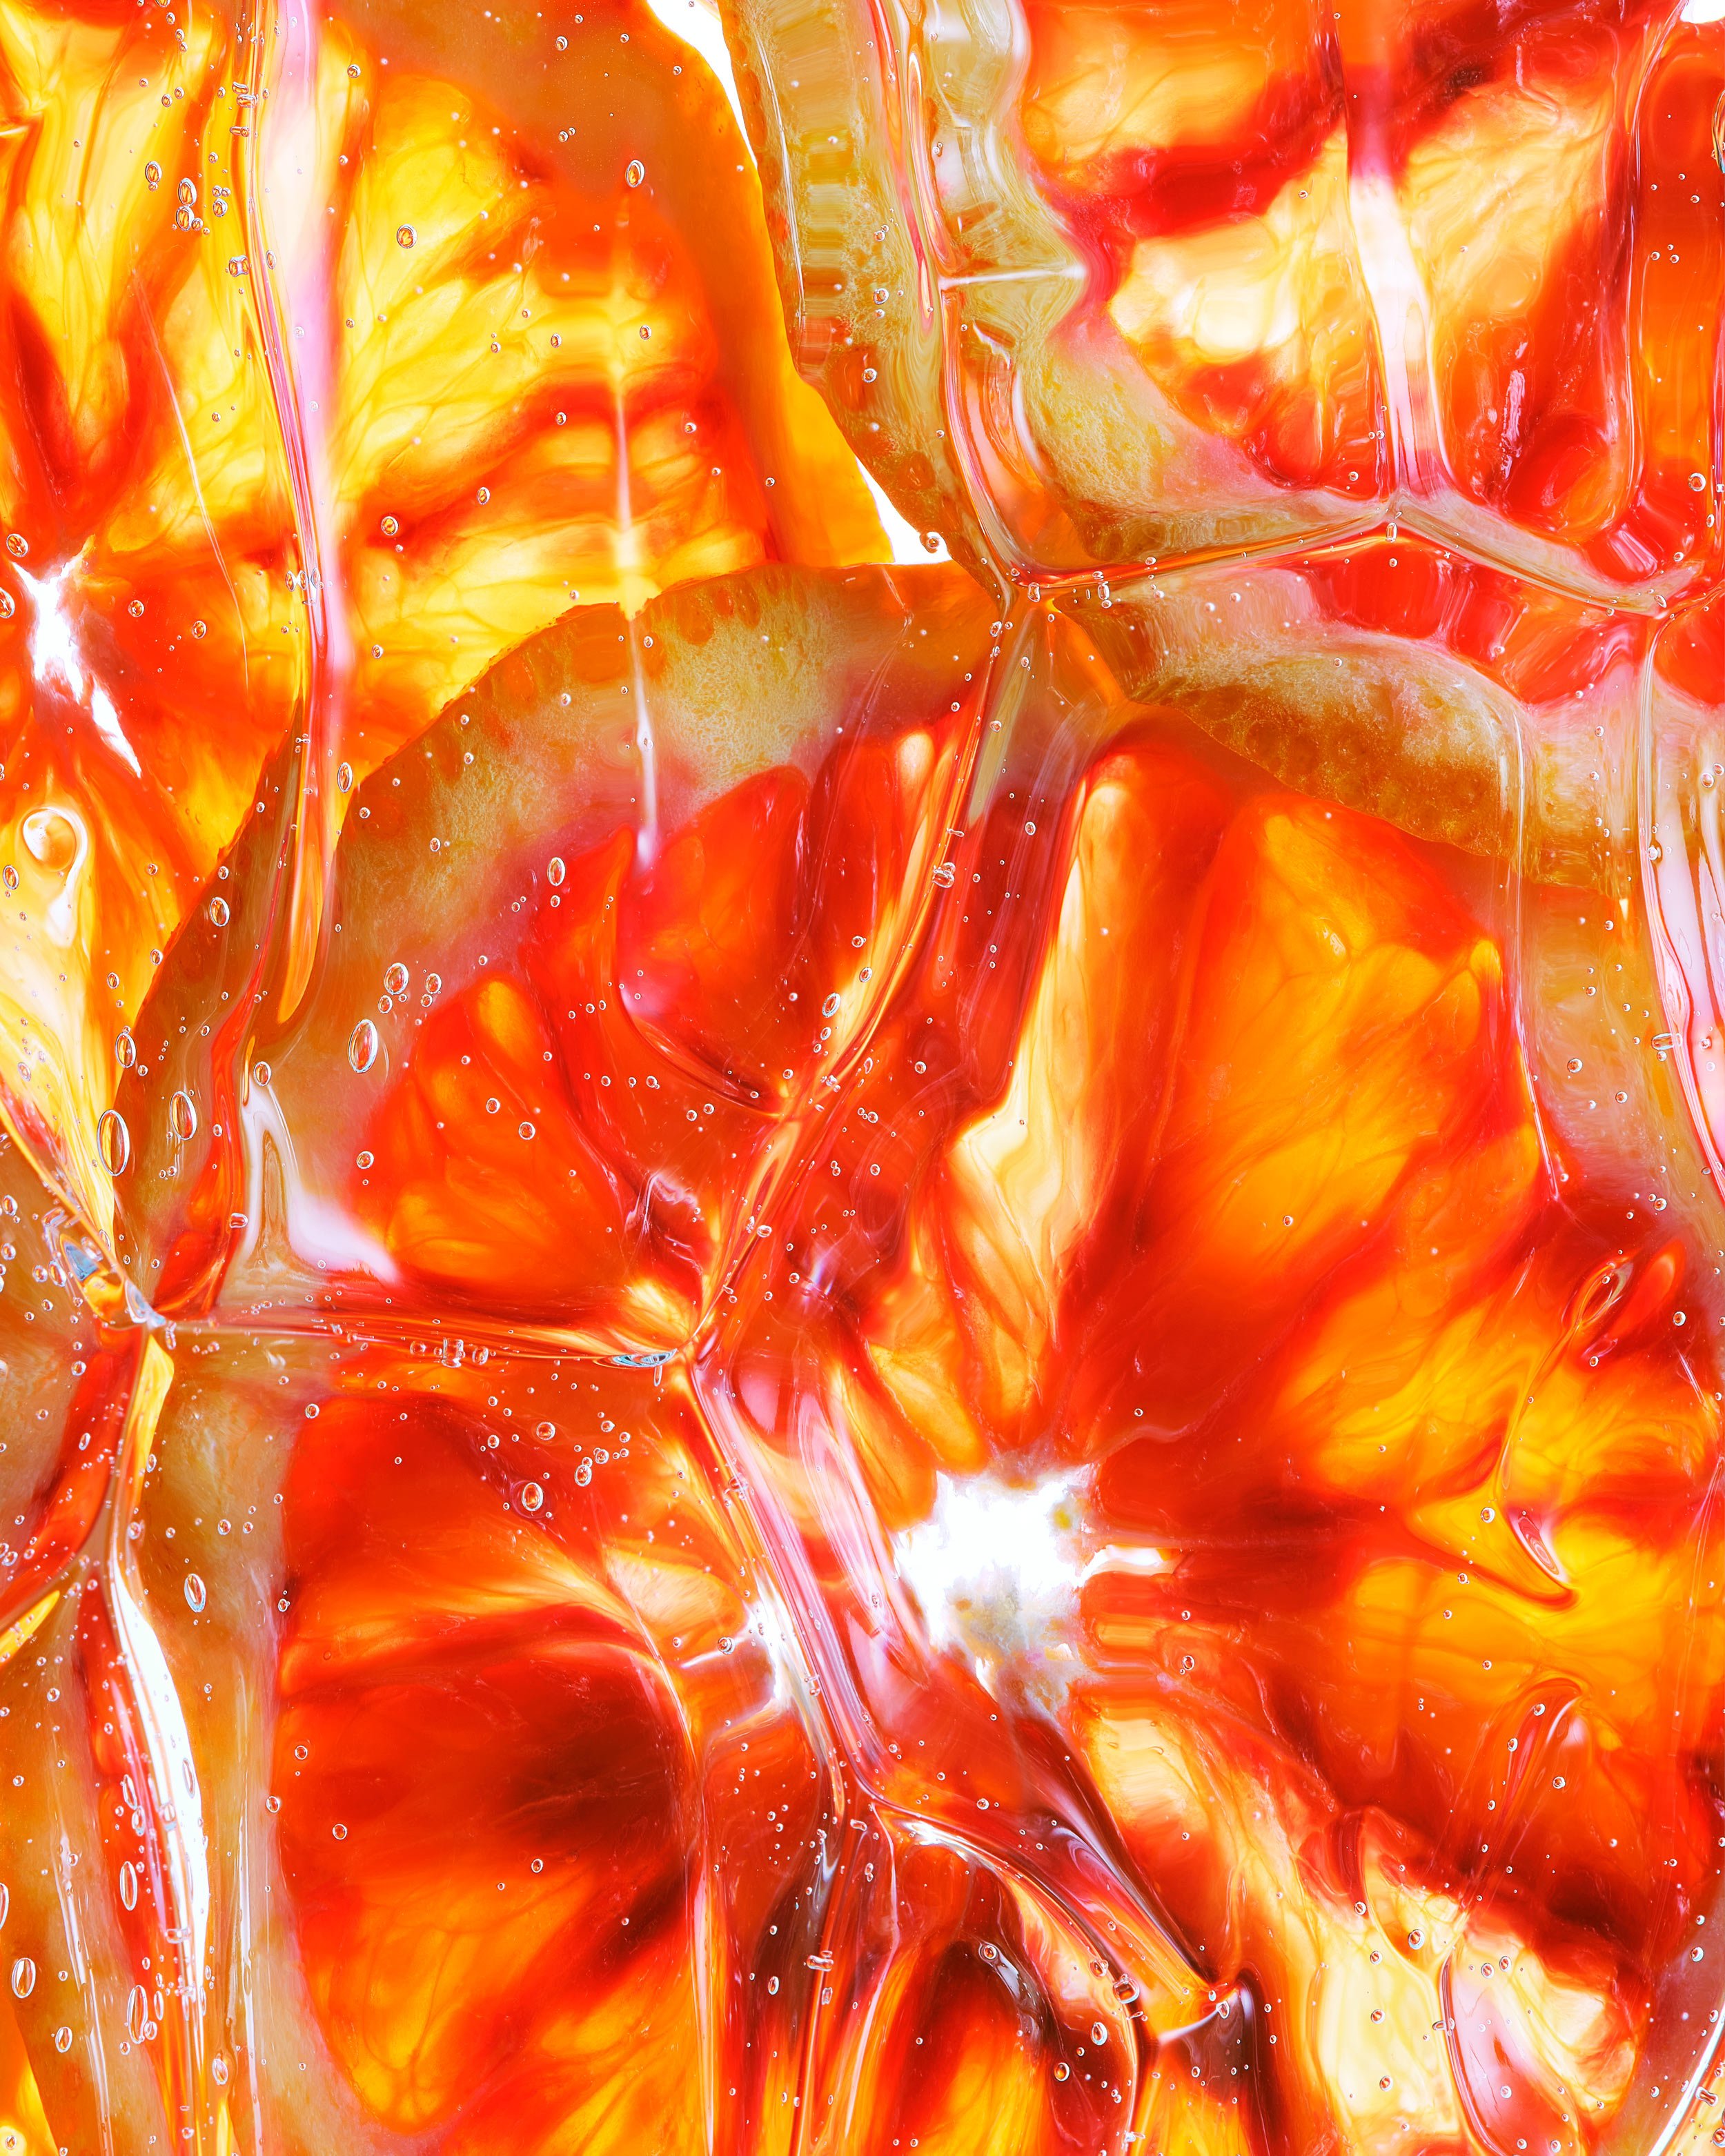 tidepool-beam-dan-simmons-juicy-fruit-blood-orange.jpg